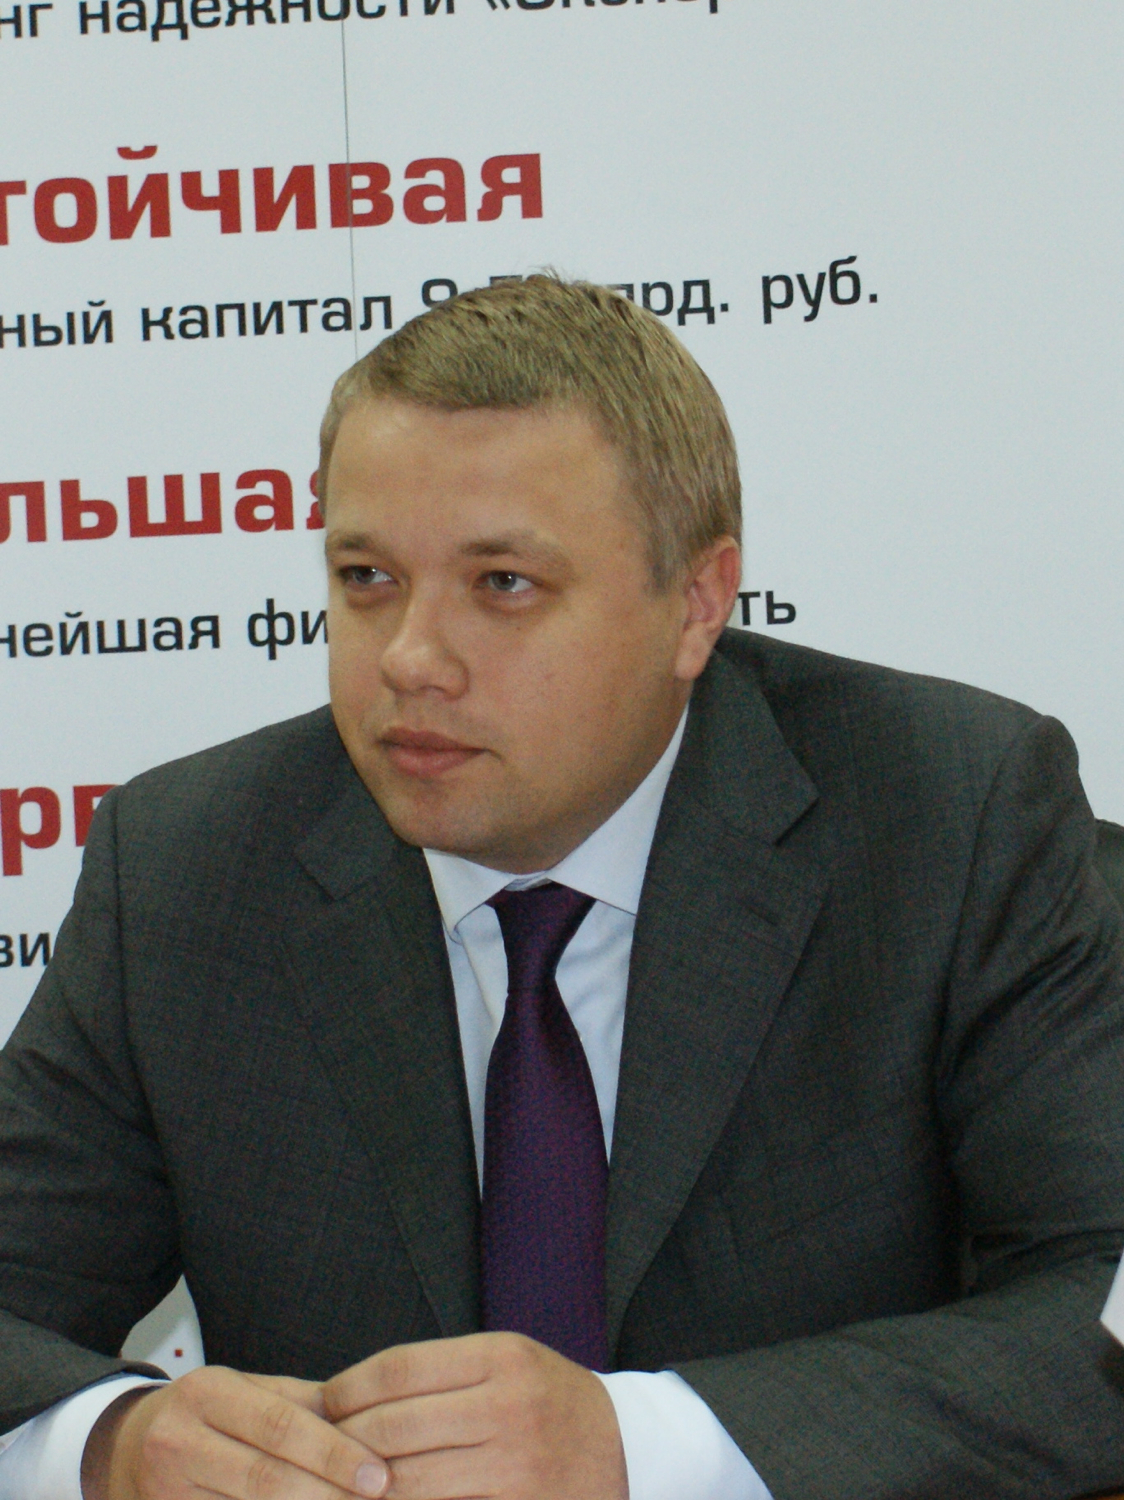 Дмитрий Тимохин, вице-президент ВТБ и президент Столичной страховой группы, представитель акционеров СГ МСК